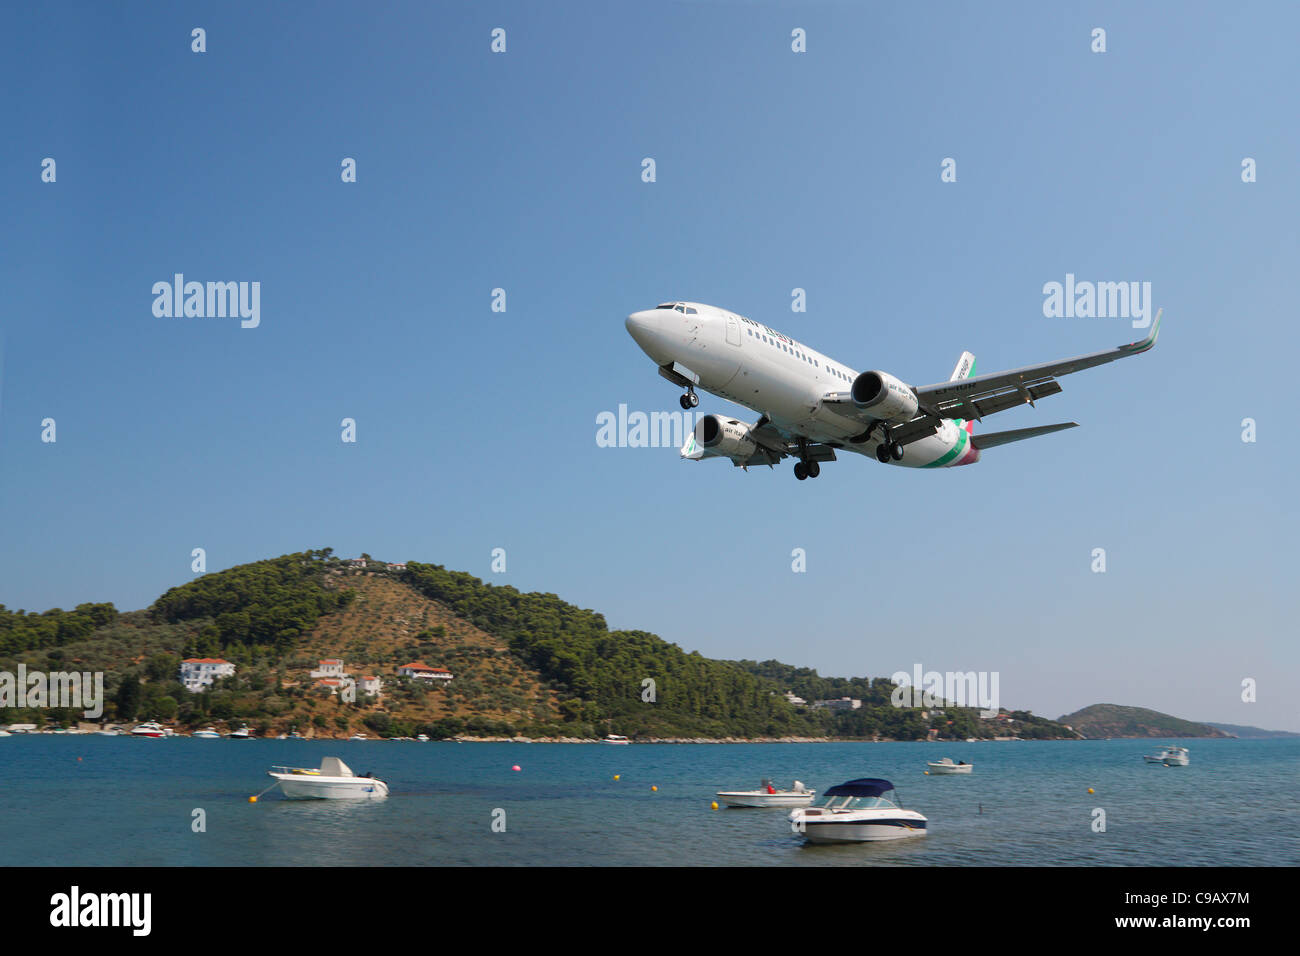 Aeroplane landing at Skiathos Town, Skiathos, Greece Stock Photo